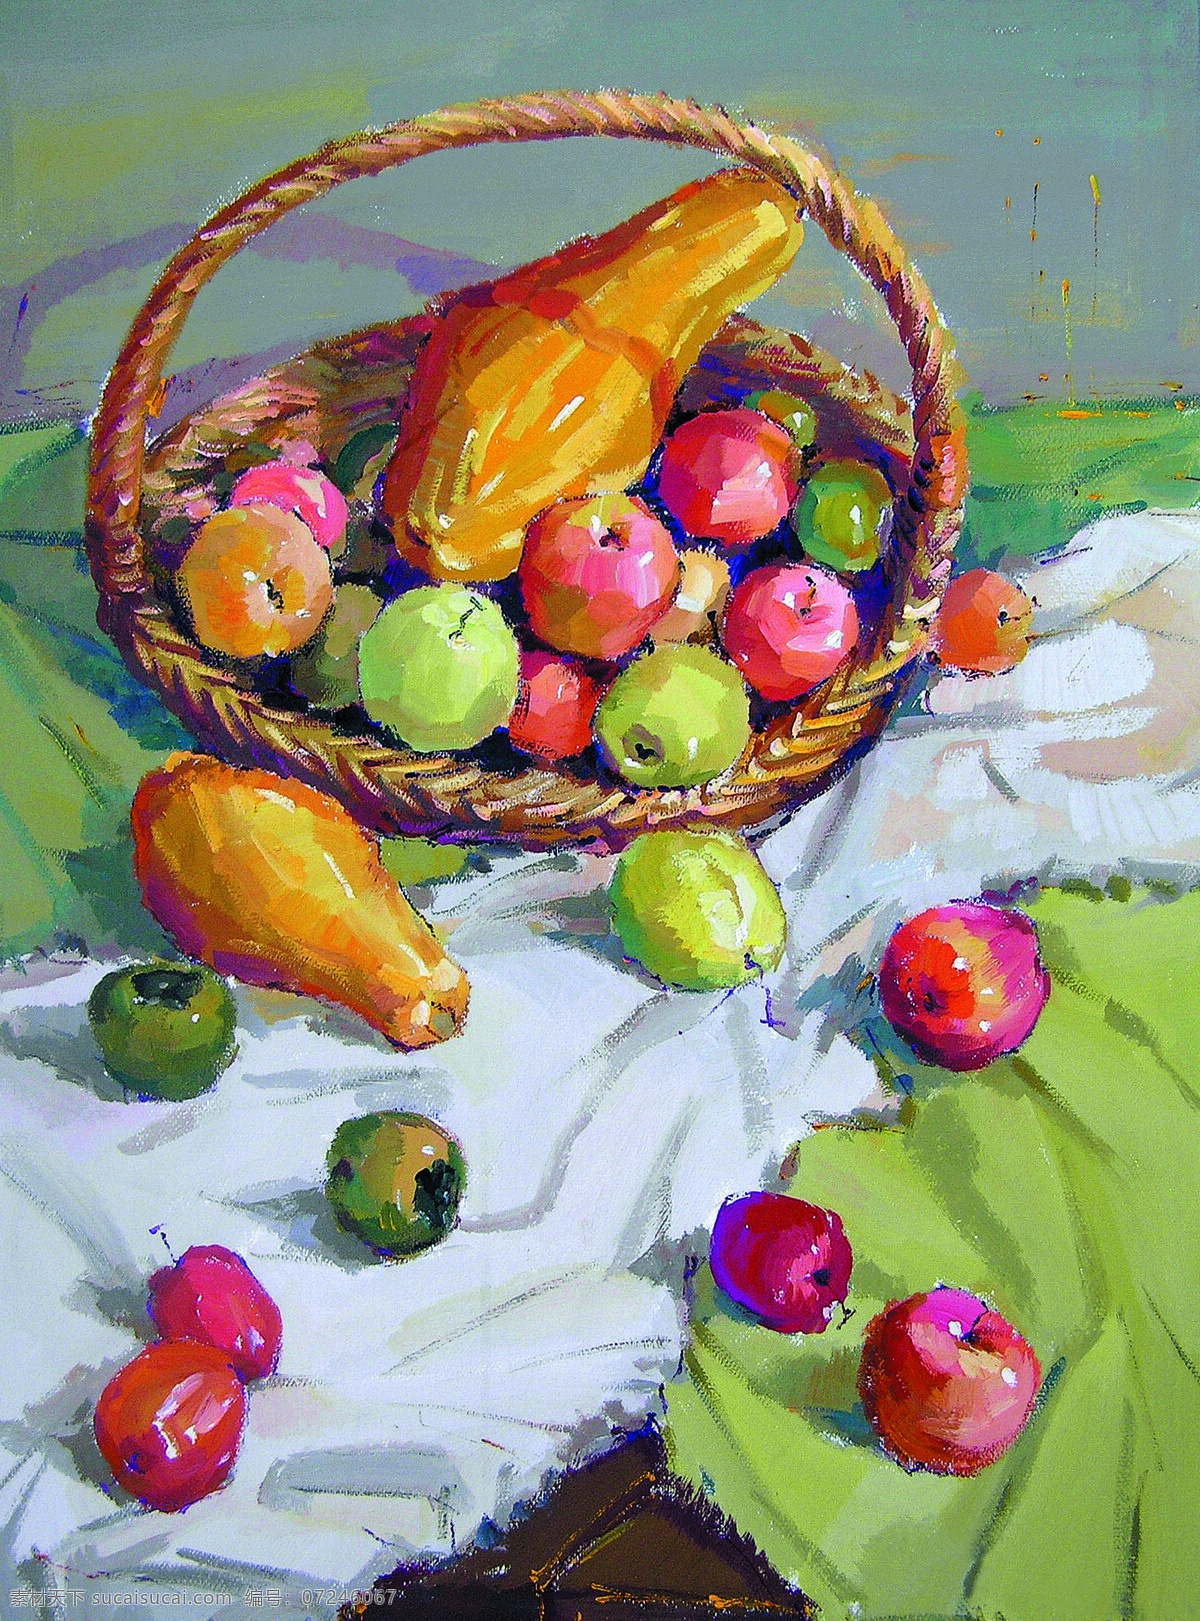 静物水果 美术 水粉画 静物画 水果 苹果 青梨 甜瓜 柿子 绘画书法 文化艺术